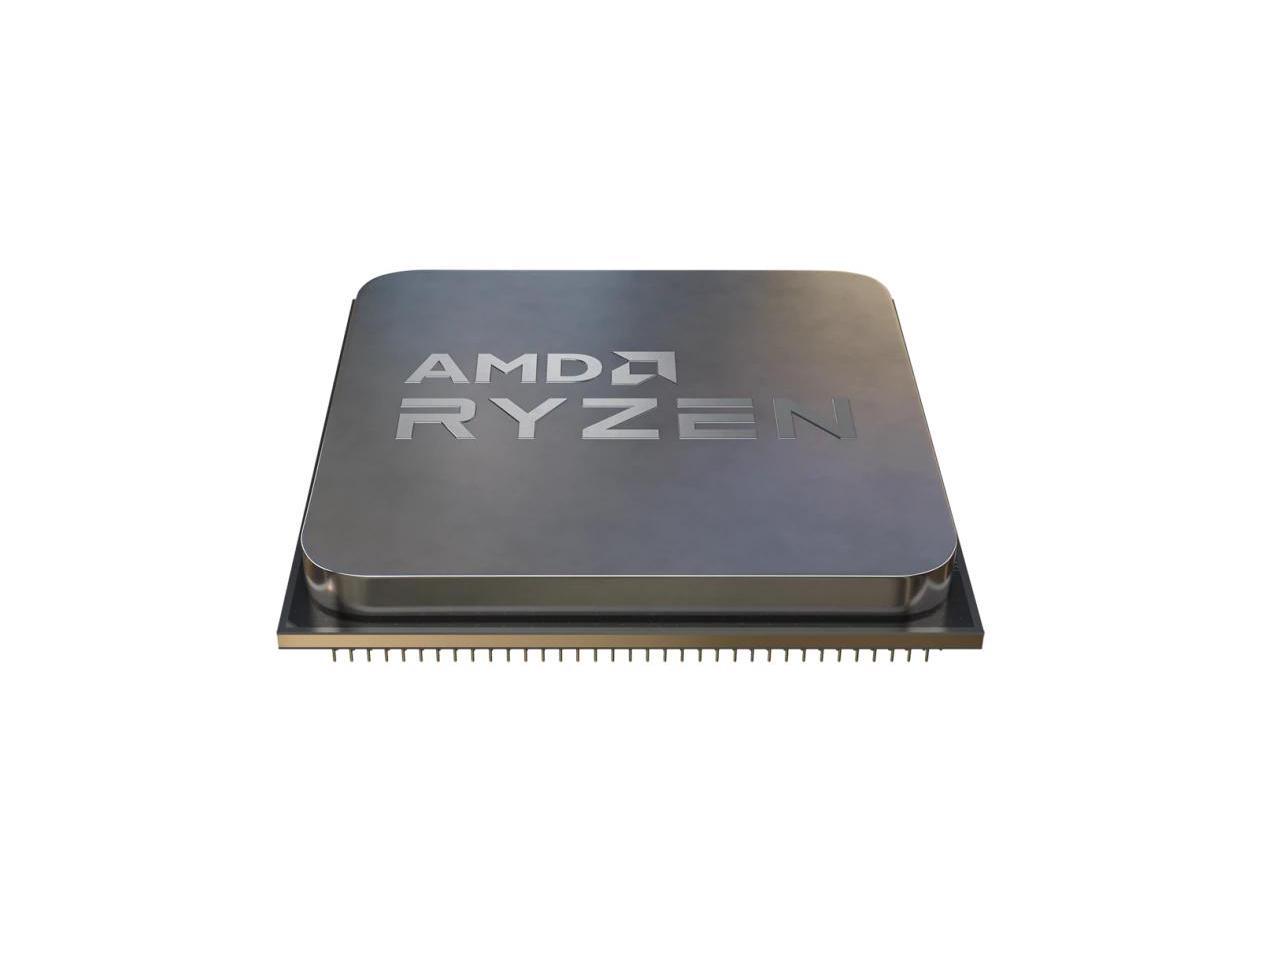 AMD Ryzen 9 5950X 16-core, 32-Thread Unlocked Desktop Processor $470